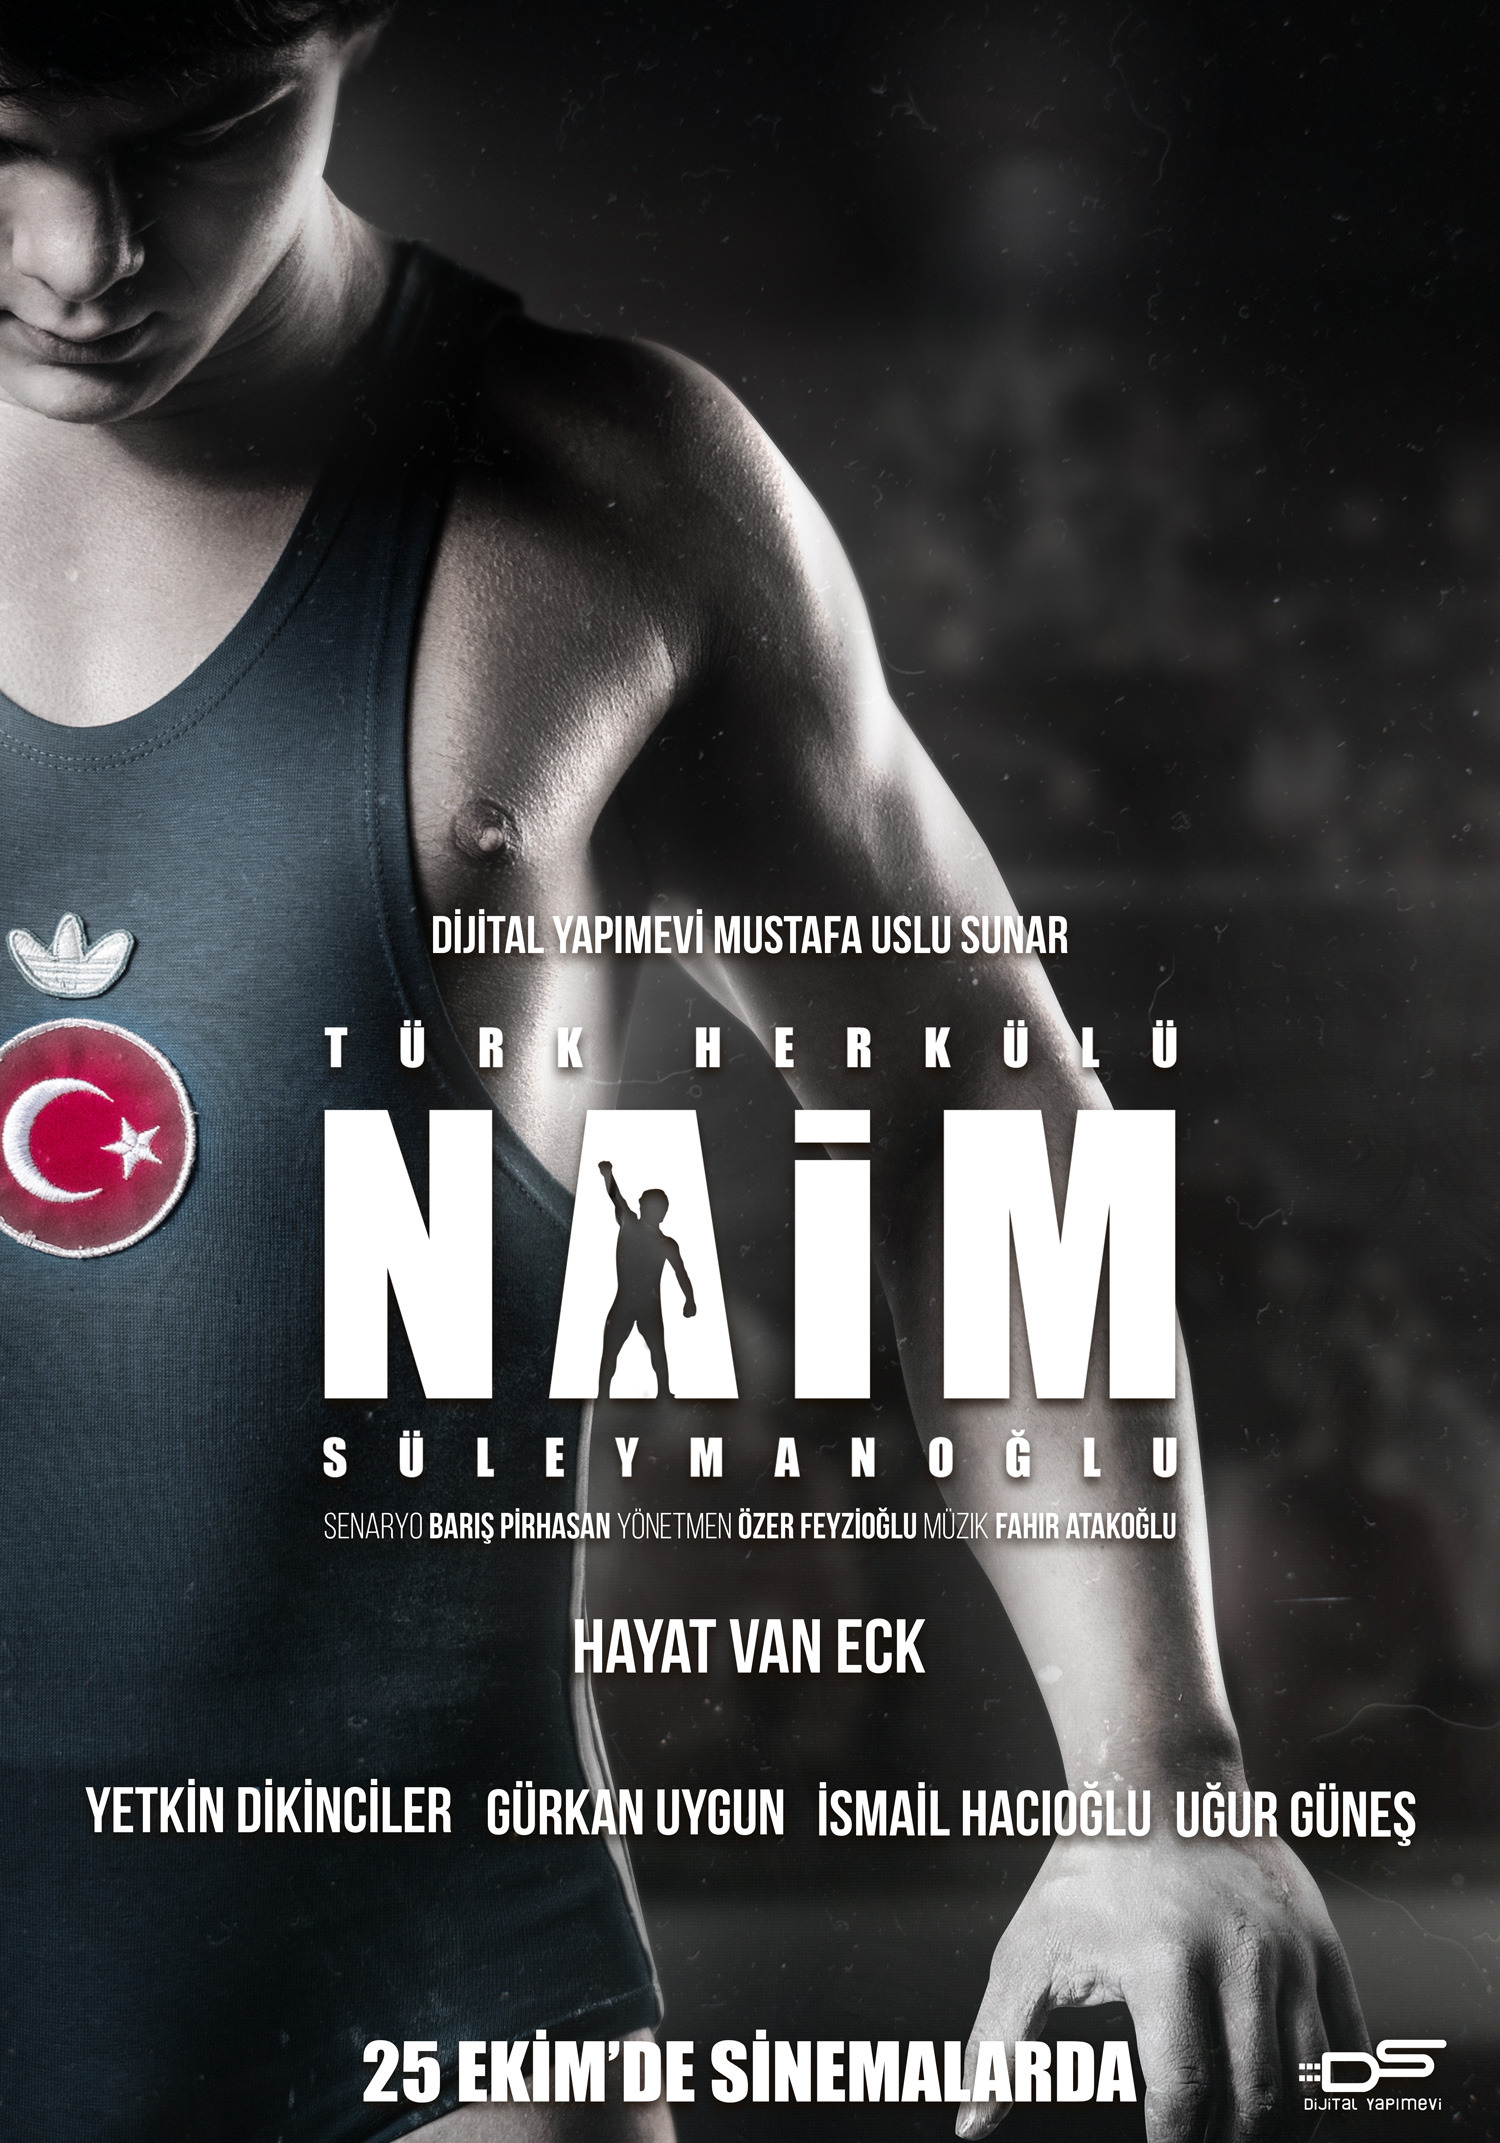 Mega Sized Movie Poster Image for Cep Herkülü: Naim Süleymanoglu (#2 of 2)